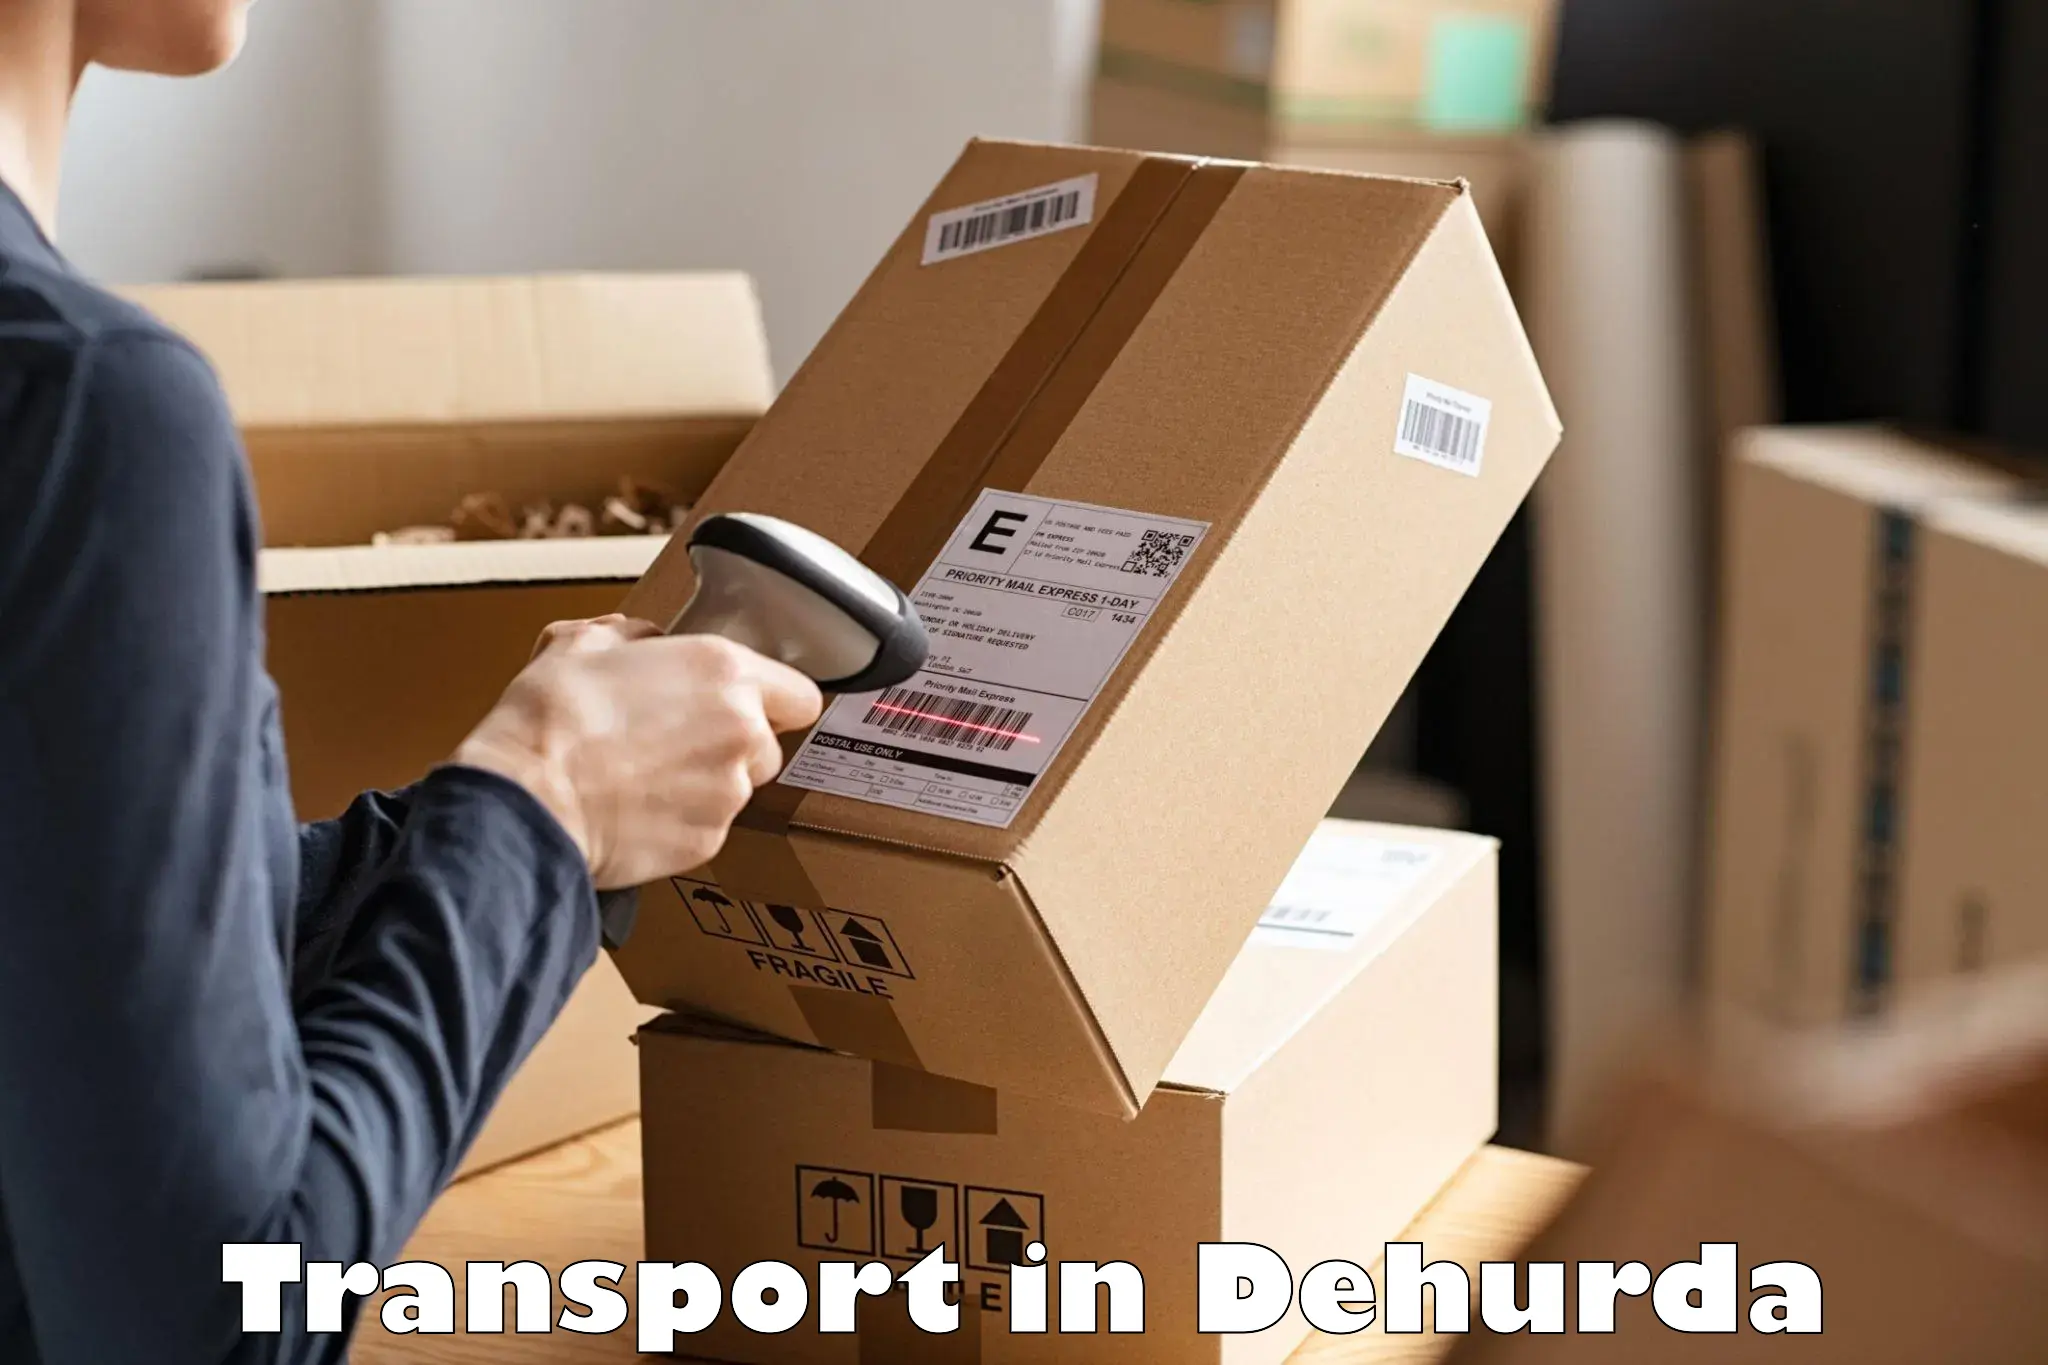 Furniture transport service in Dehurda